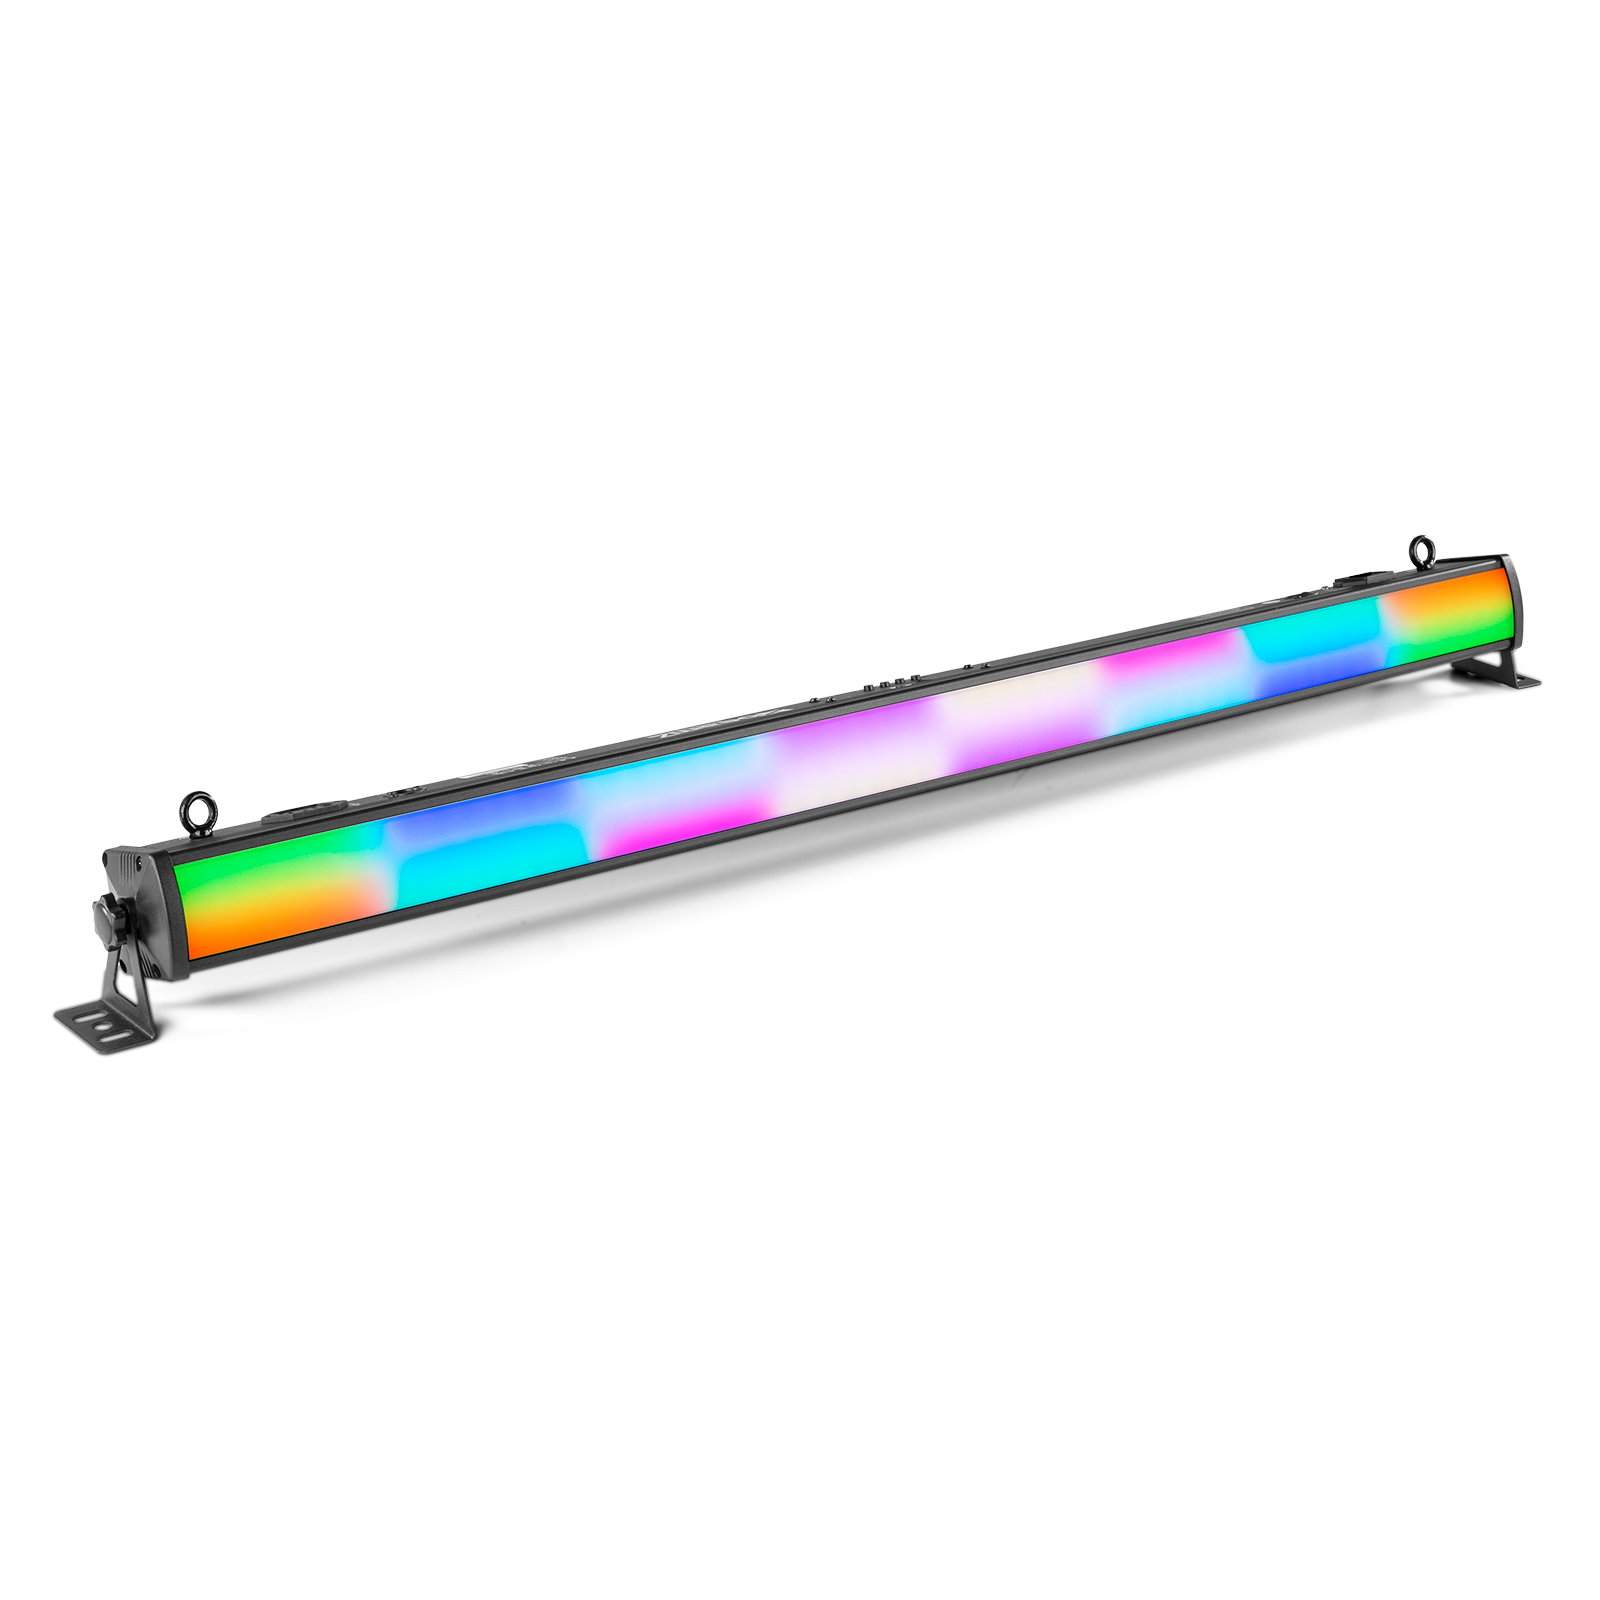 Barre à LED 252x LEDs RGB - LCB252